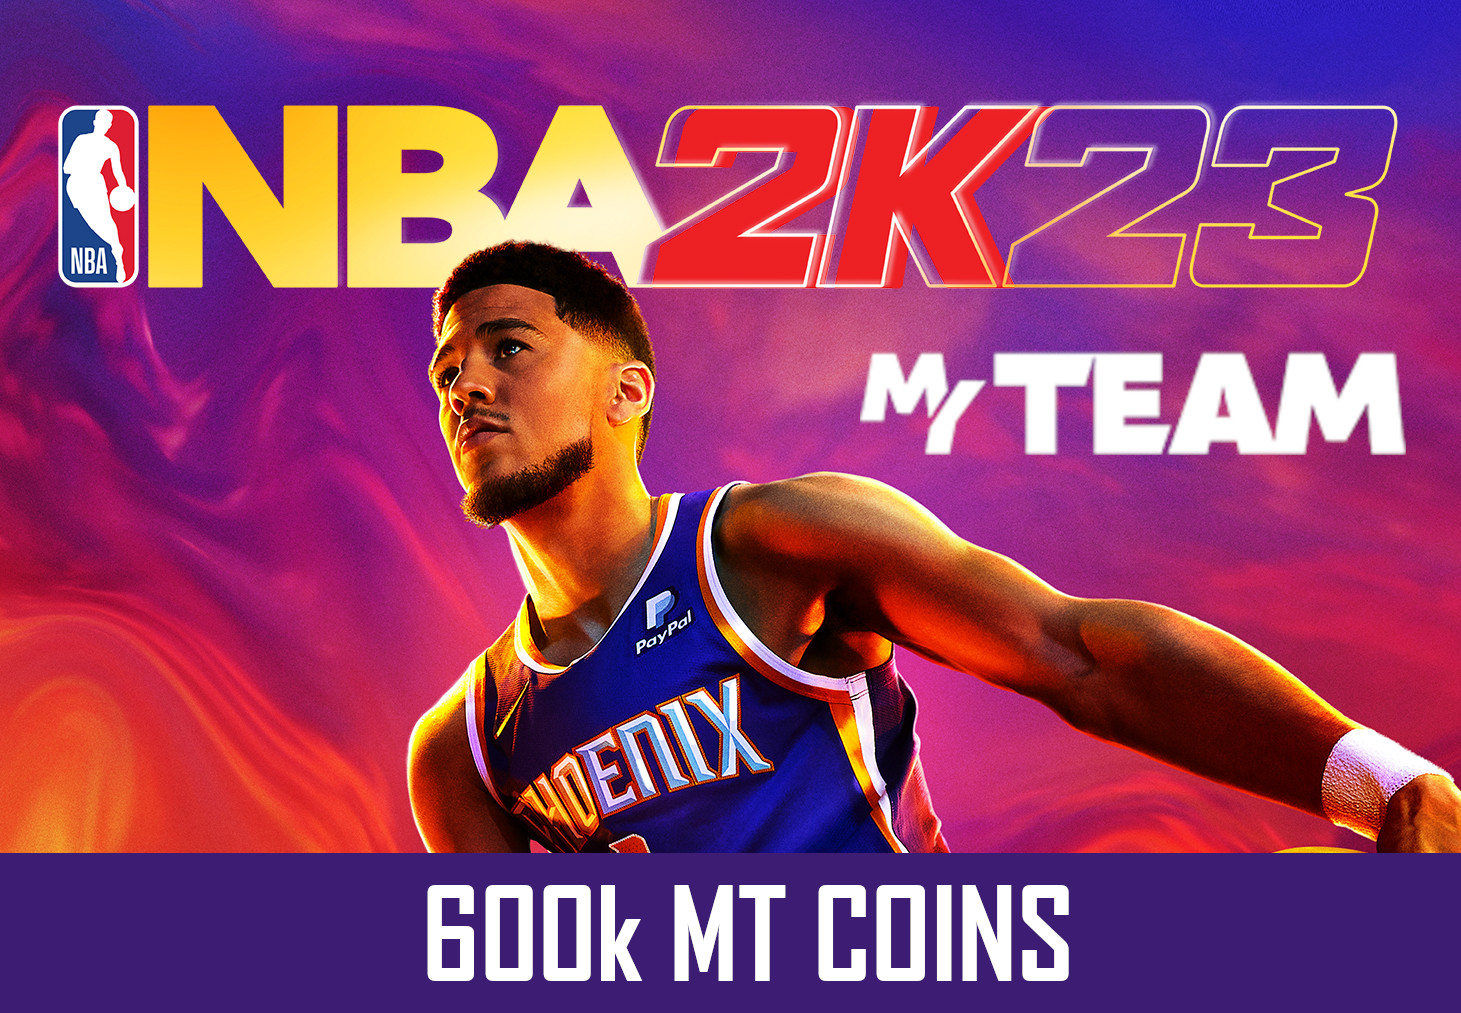 NBA 2K23 - 600k MT Coins - GLOBAL XBOX One/Series X,S